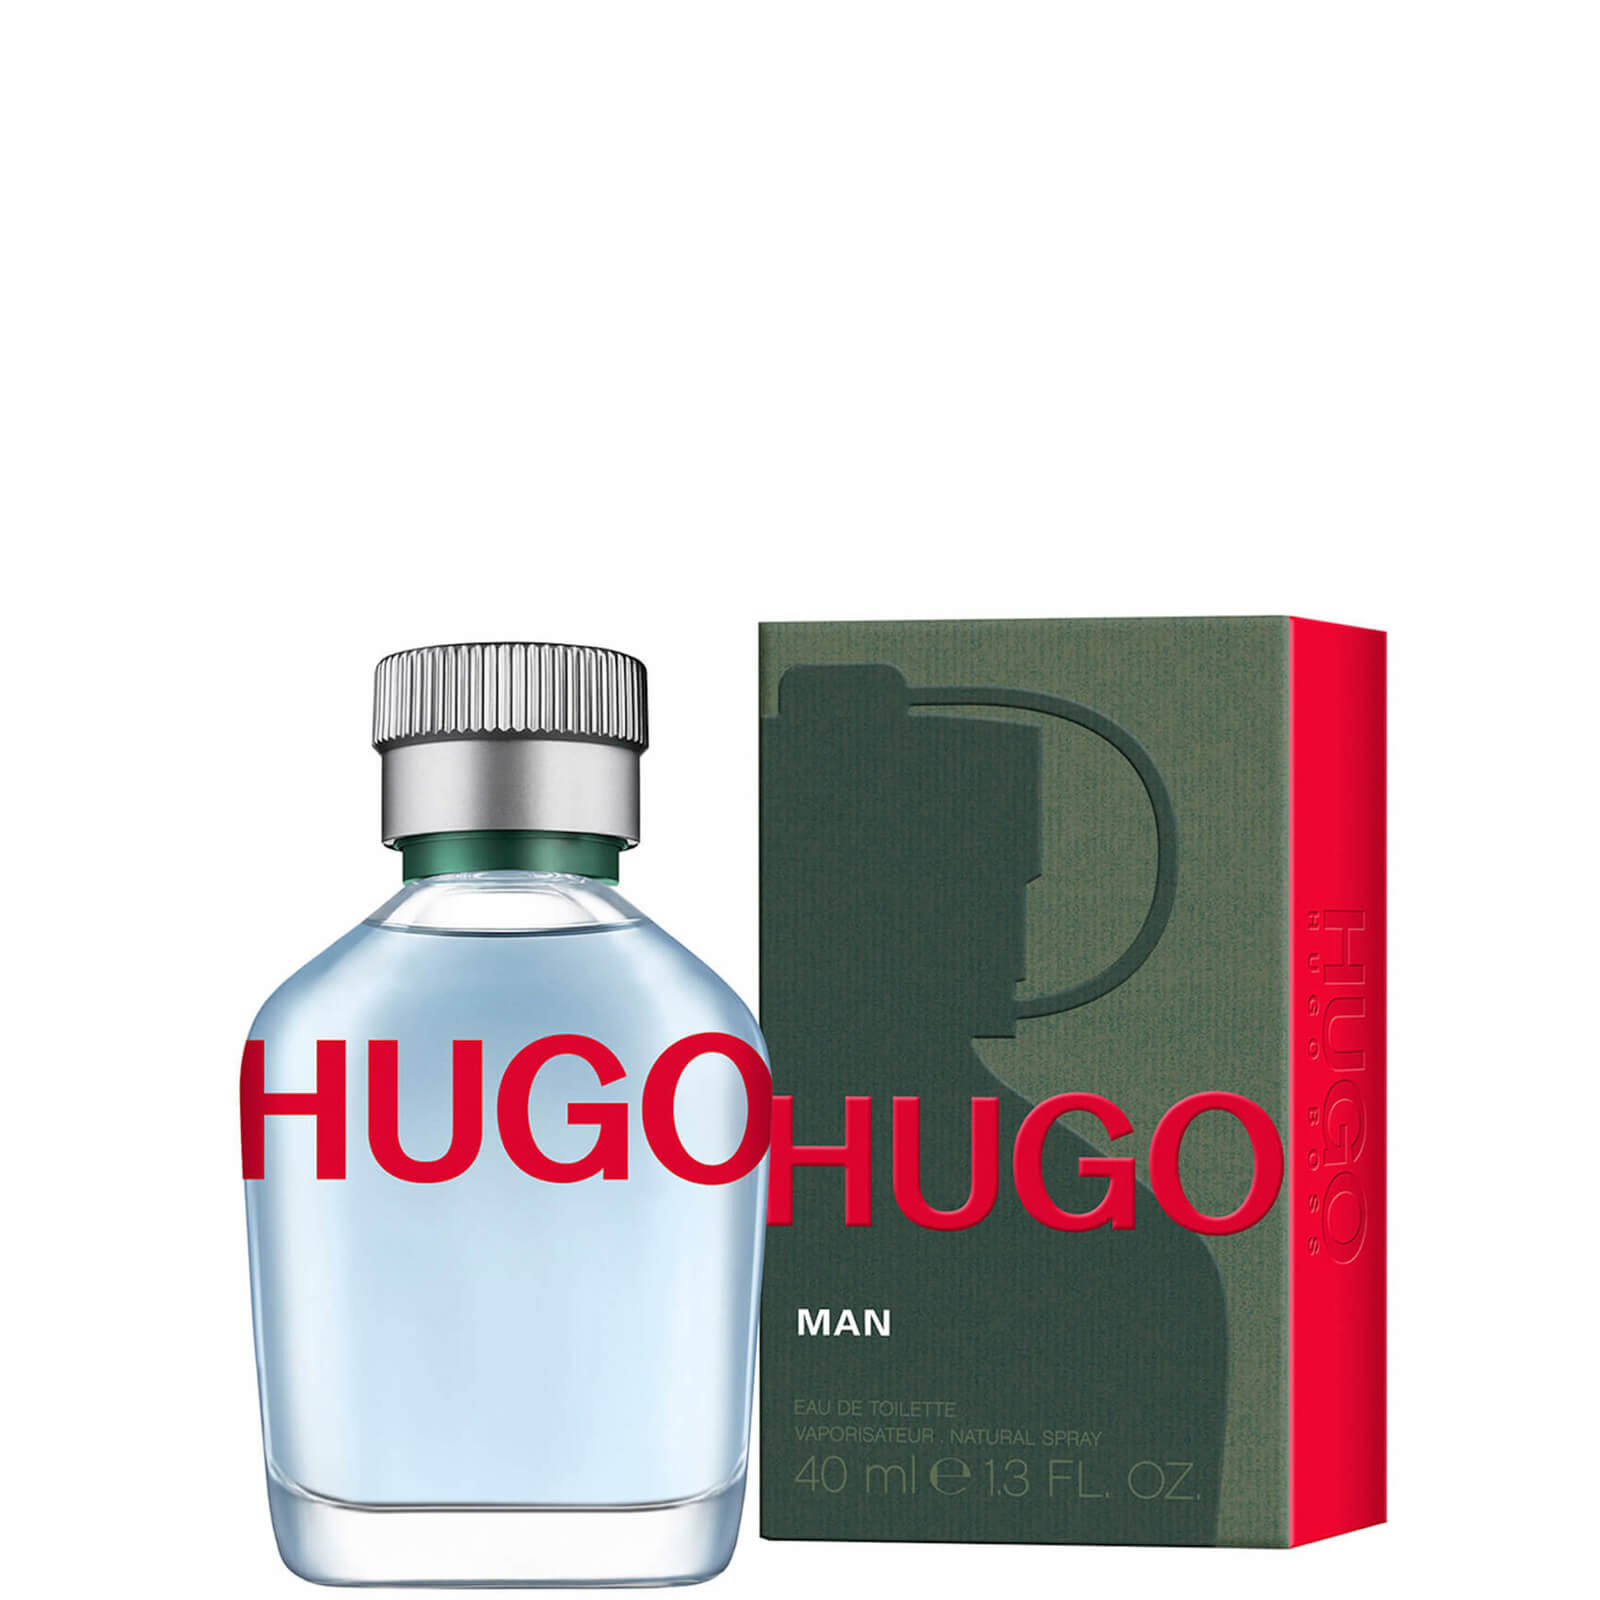 Image of HUGO BOSS HUGO Man Eau de Toilette 40ml